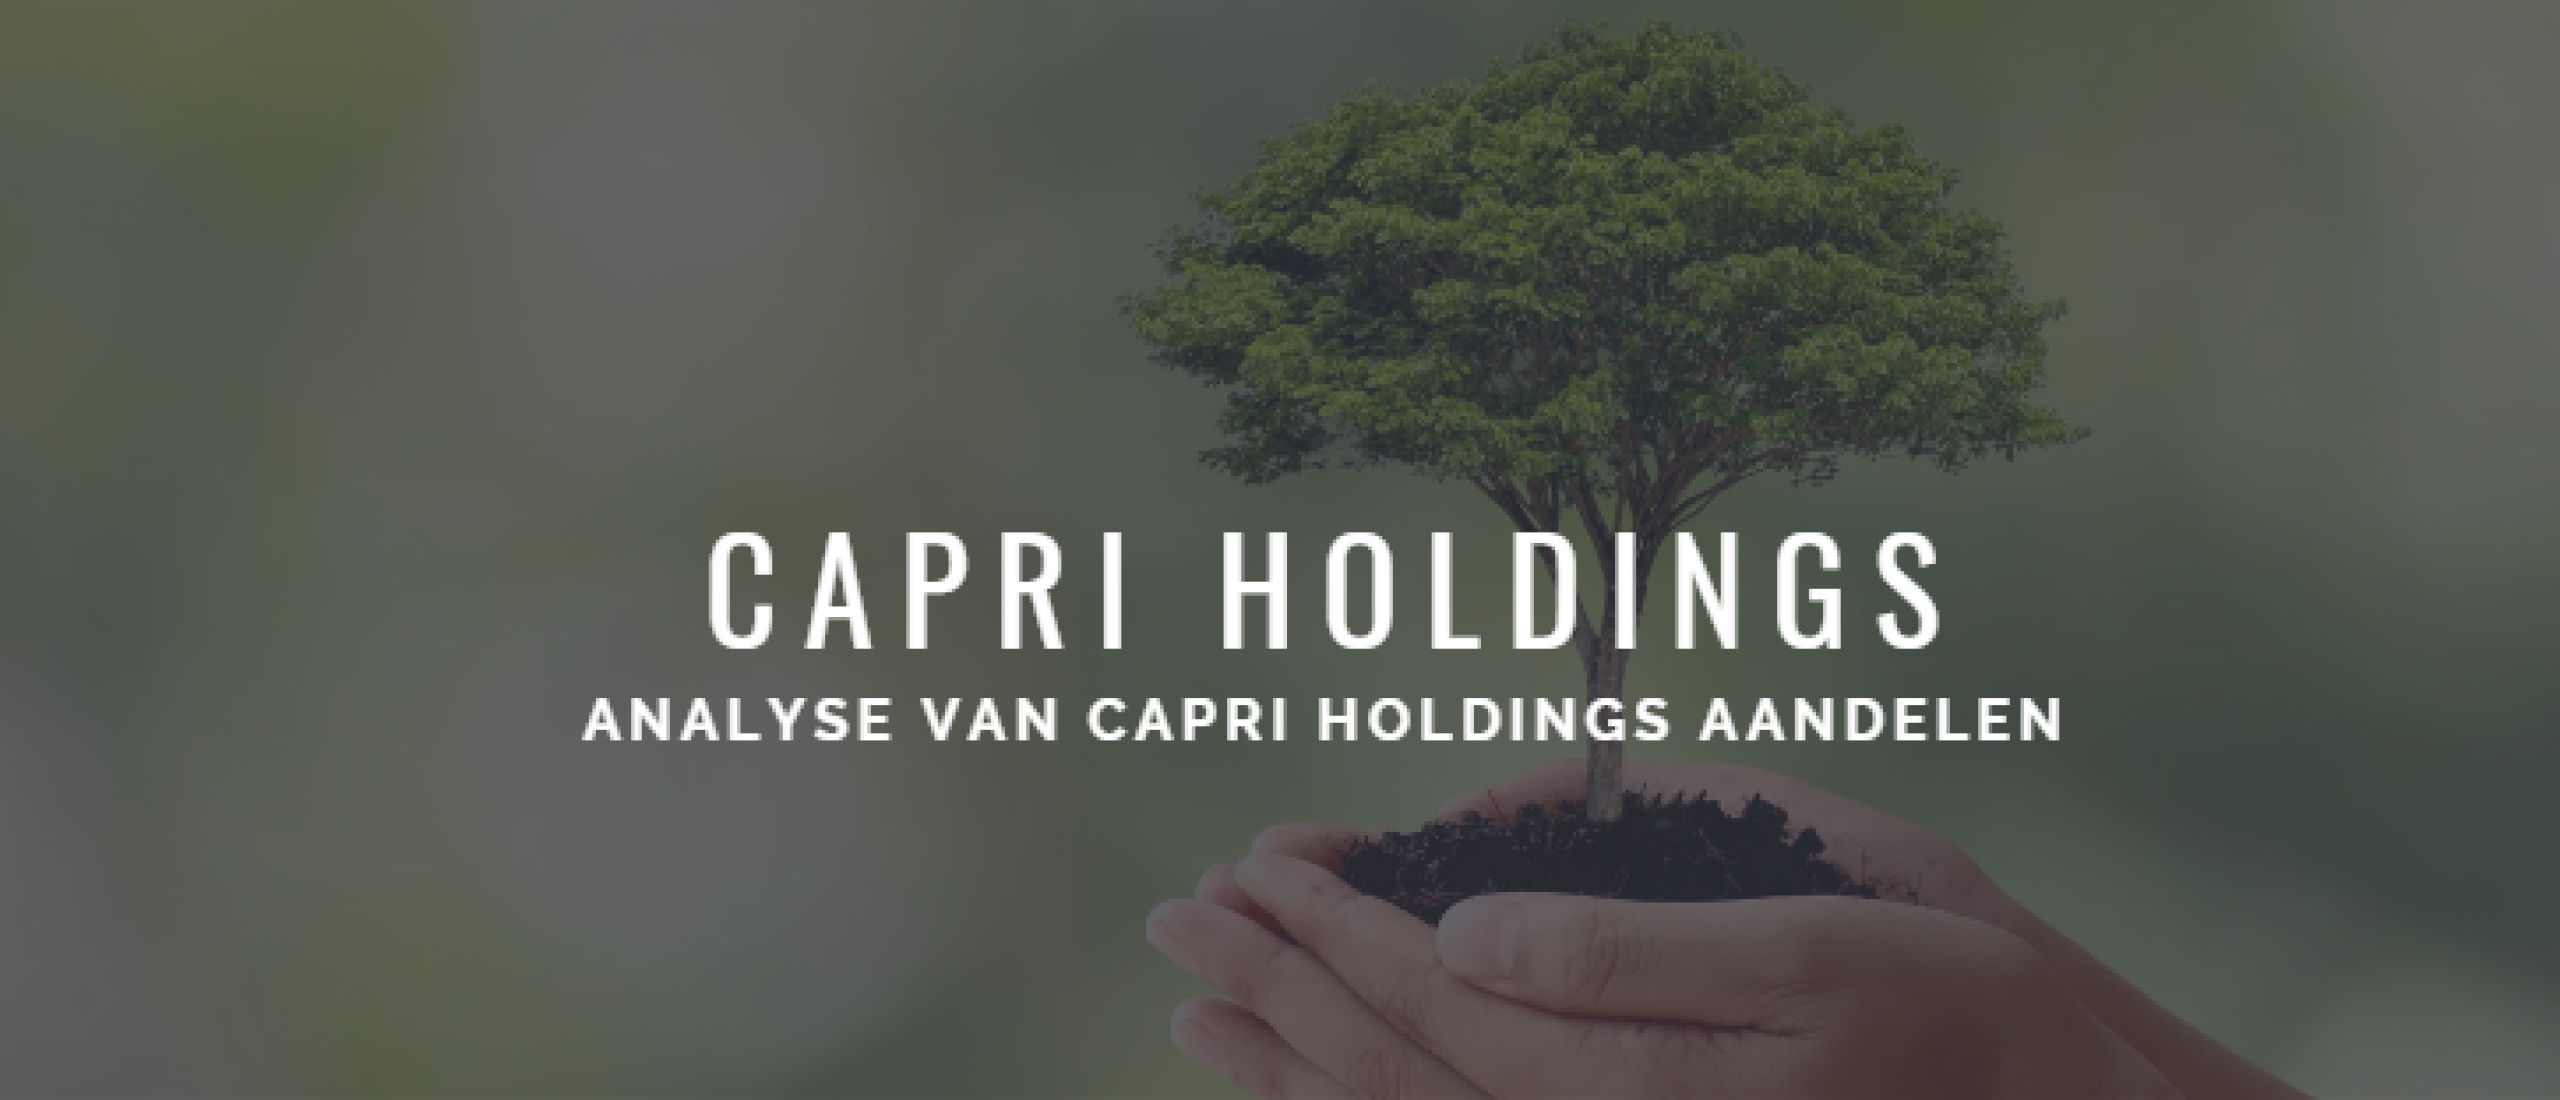 capri-holdings-analyse-aandelen